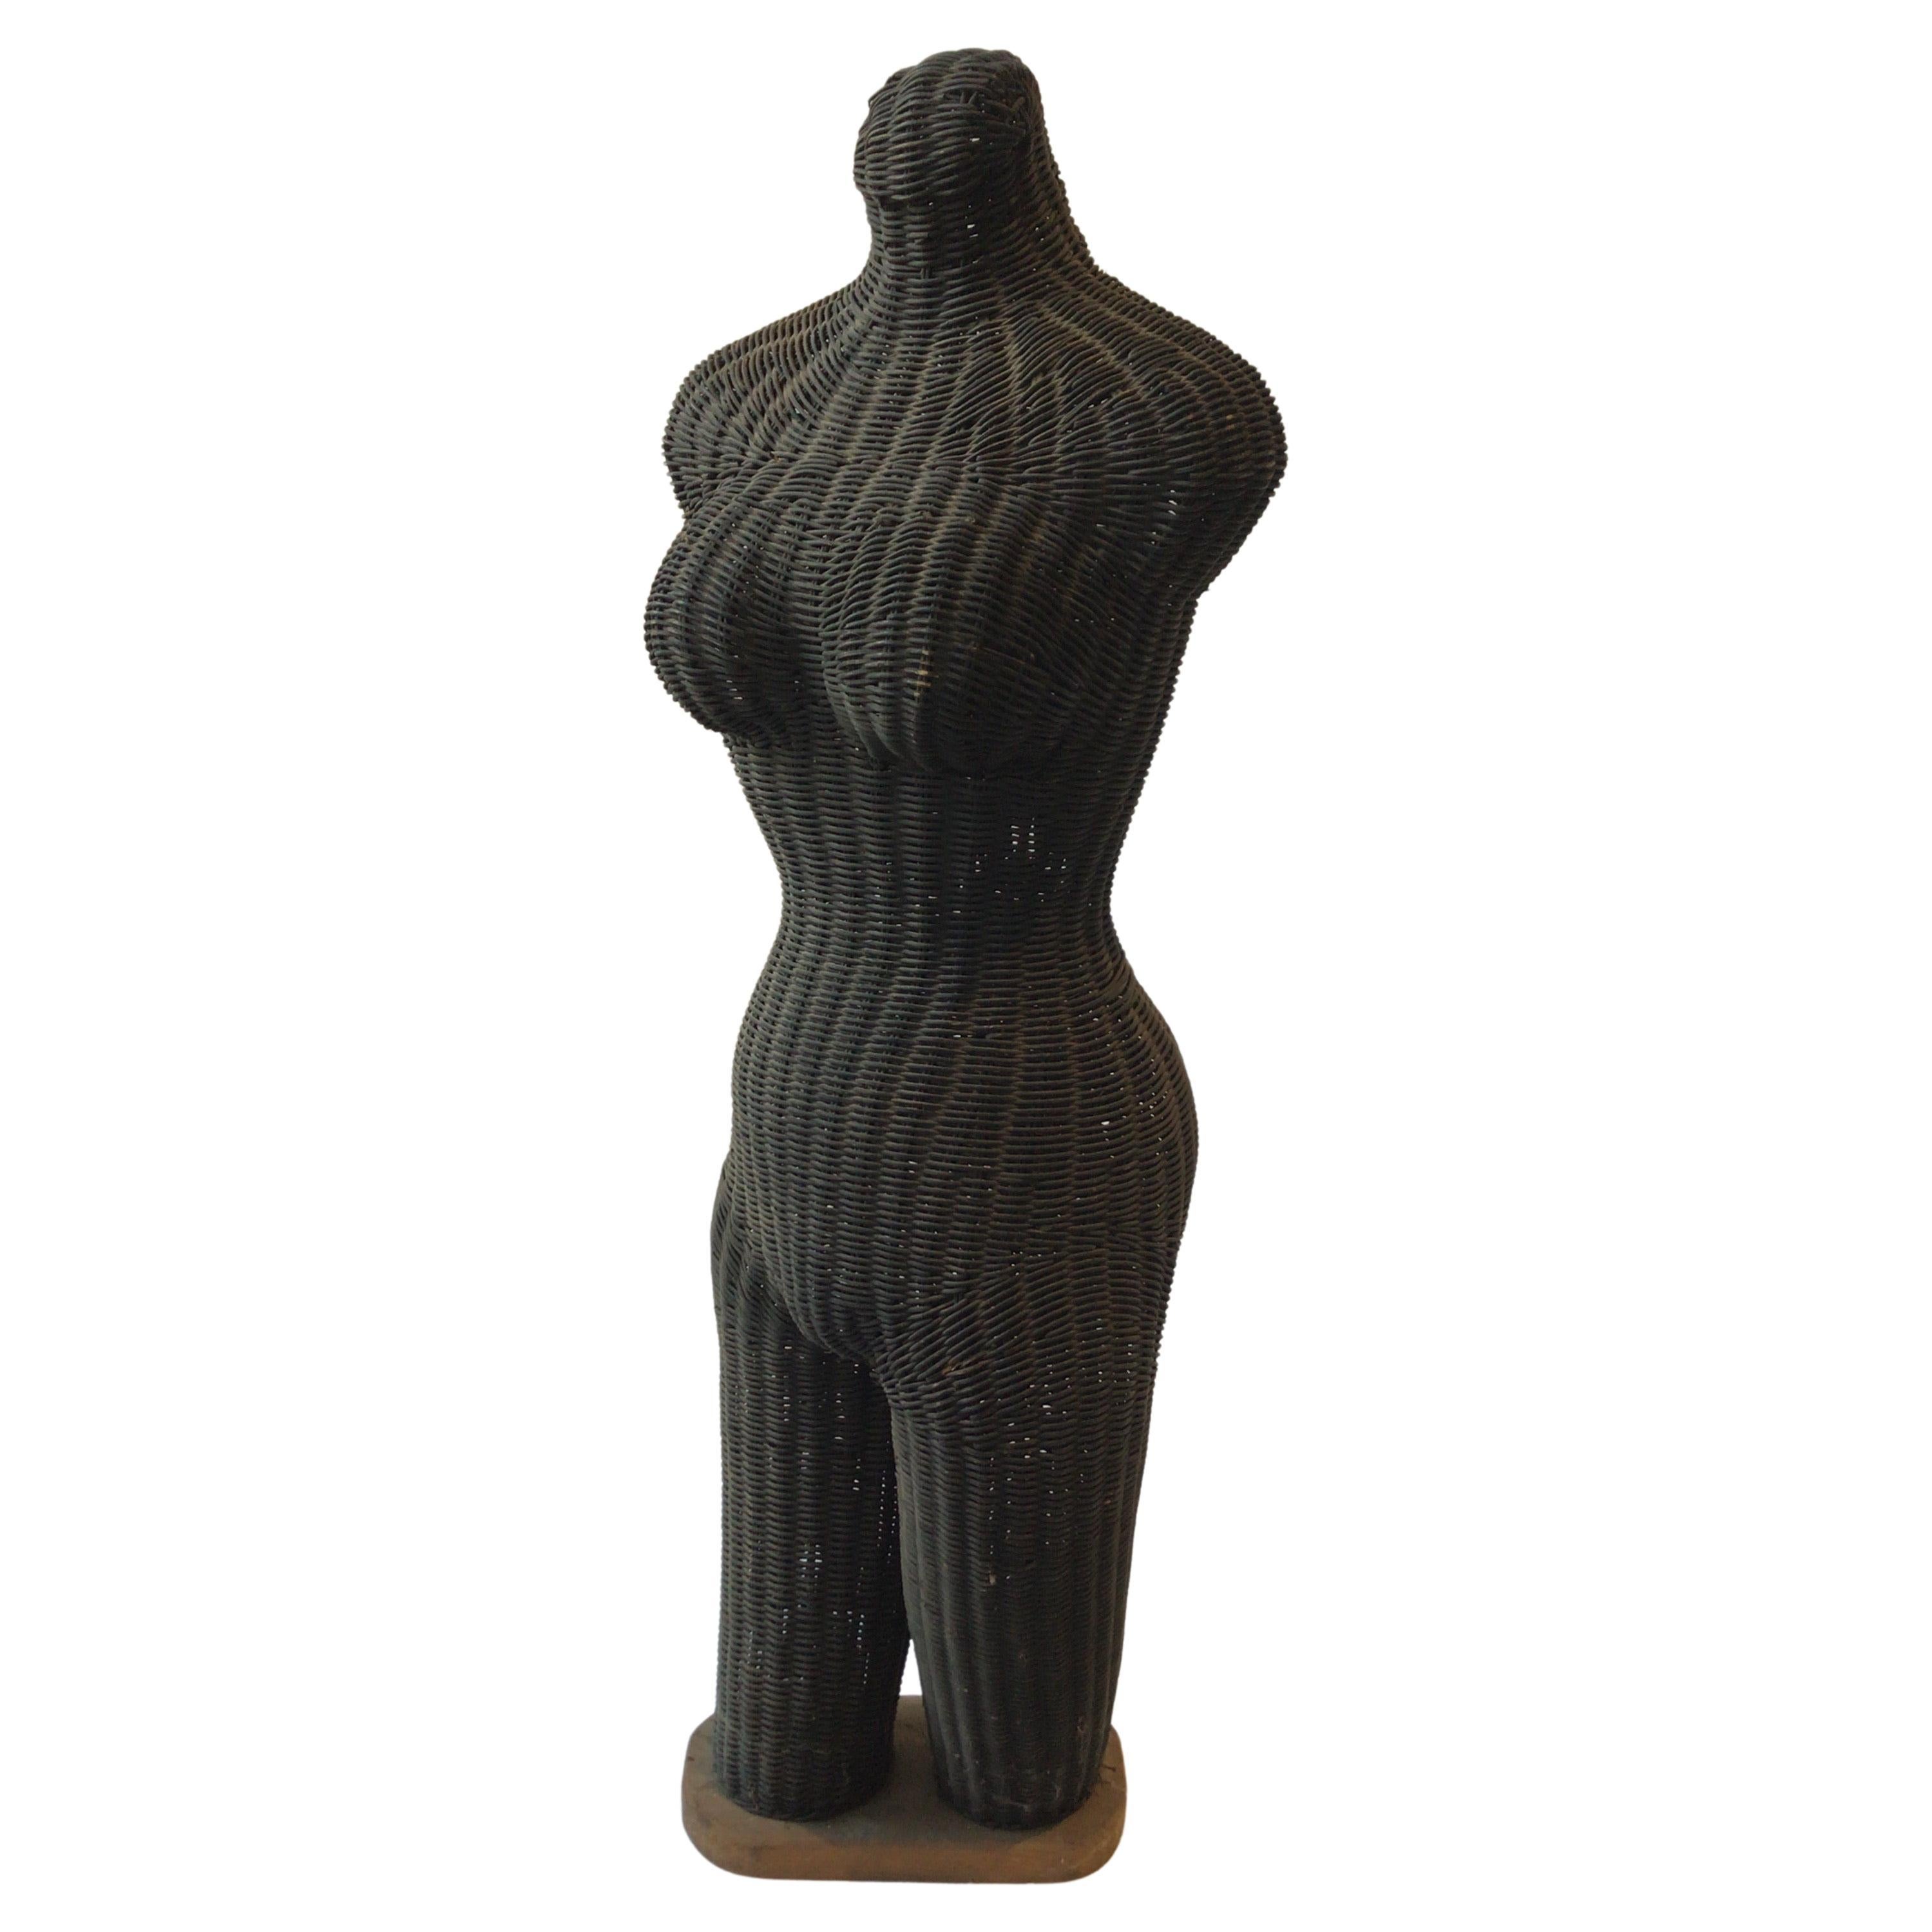 Wicker-Skulptur einer nackten Frau aus den 1960er Jahren